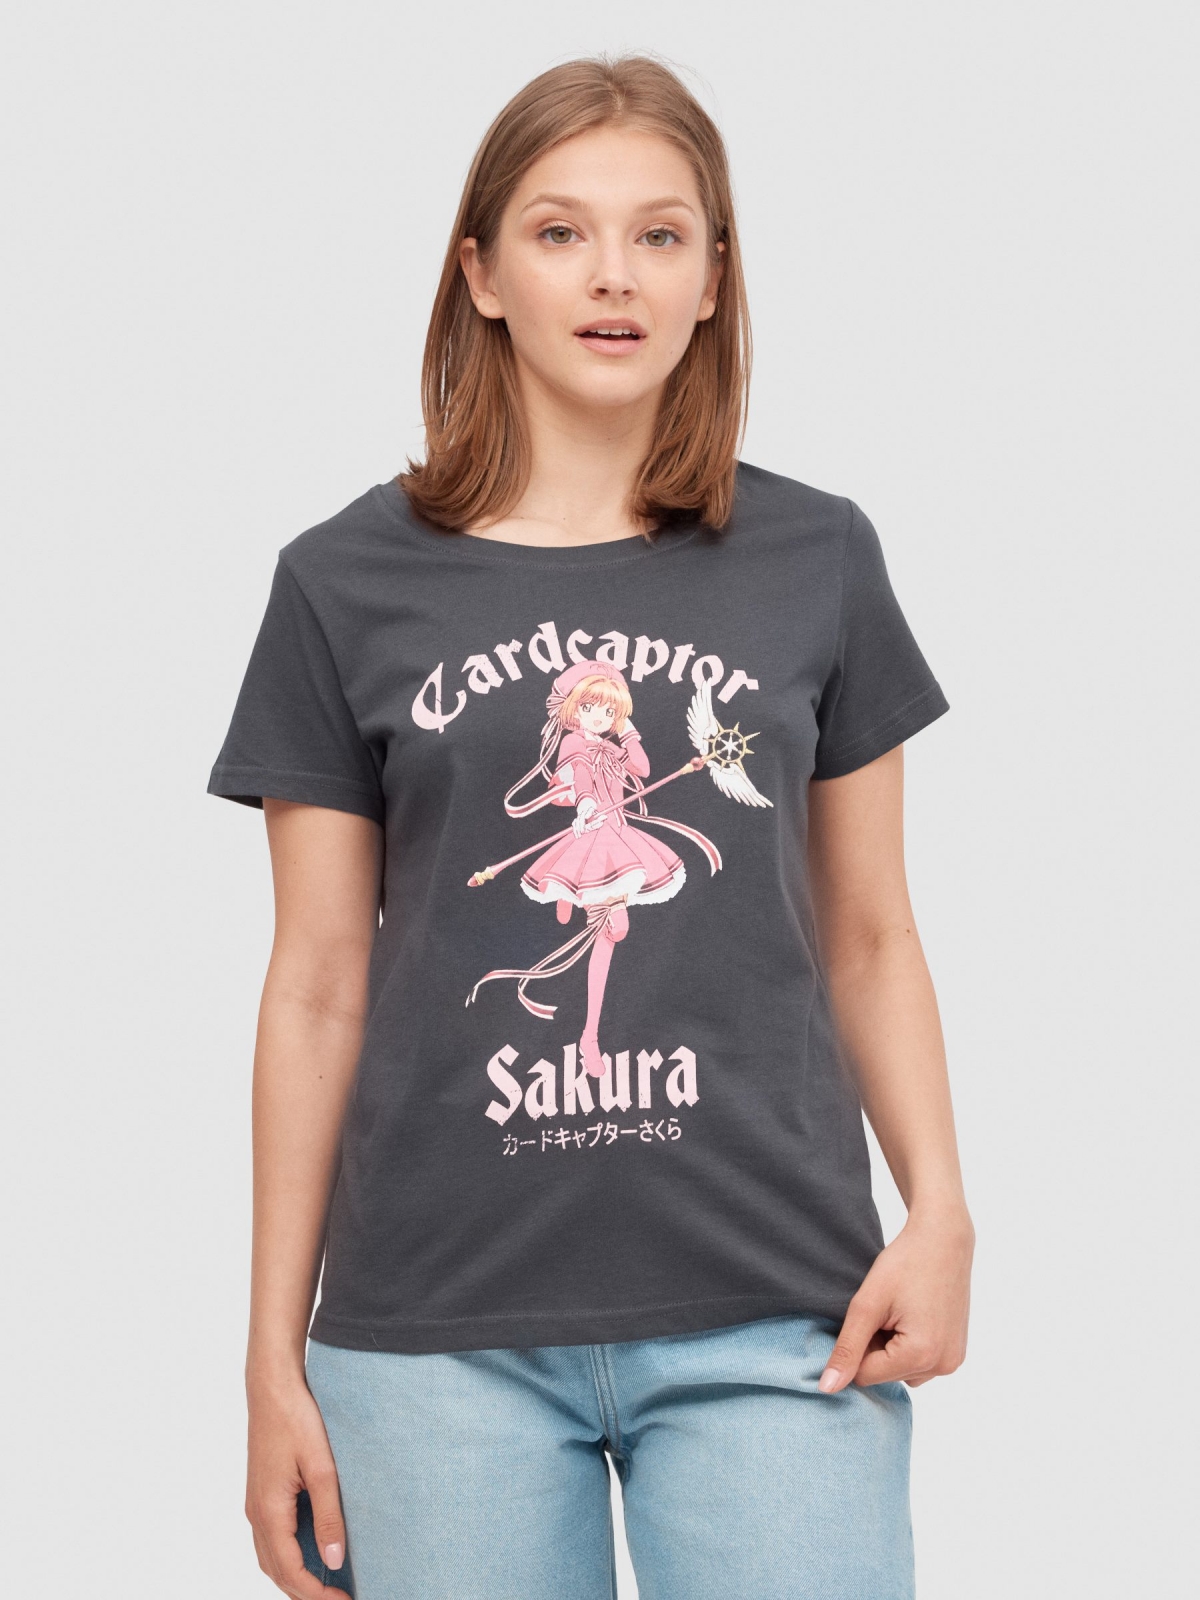 T-shirt Cardcaptor Sakura cinza escuro vista meia frontal